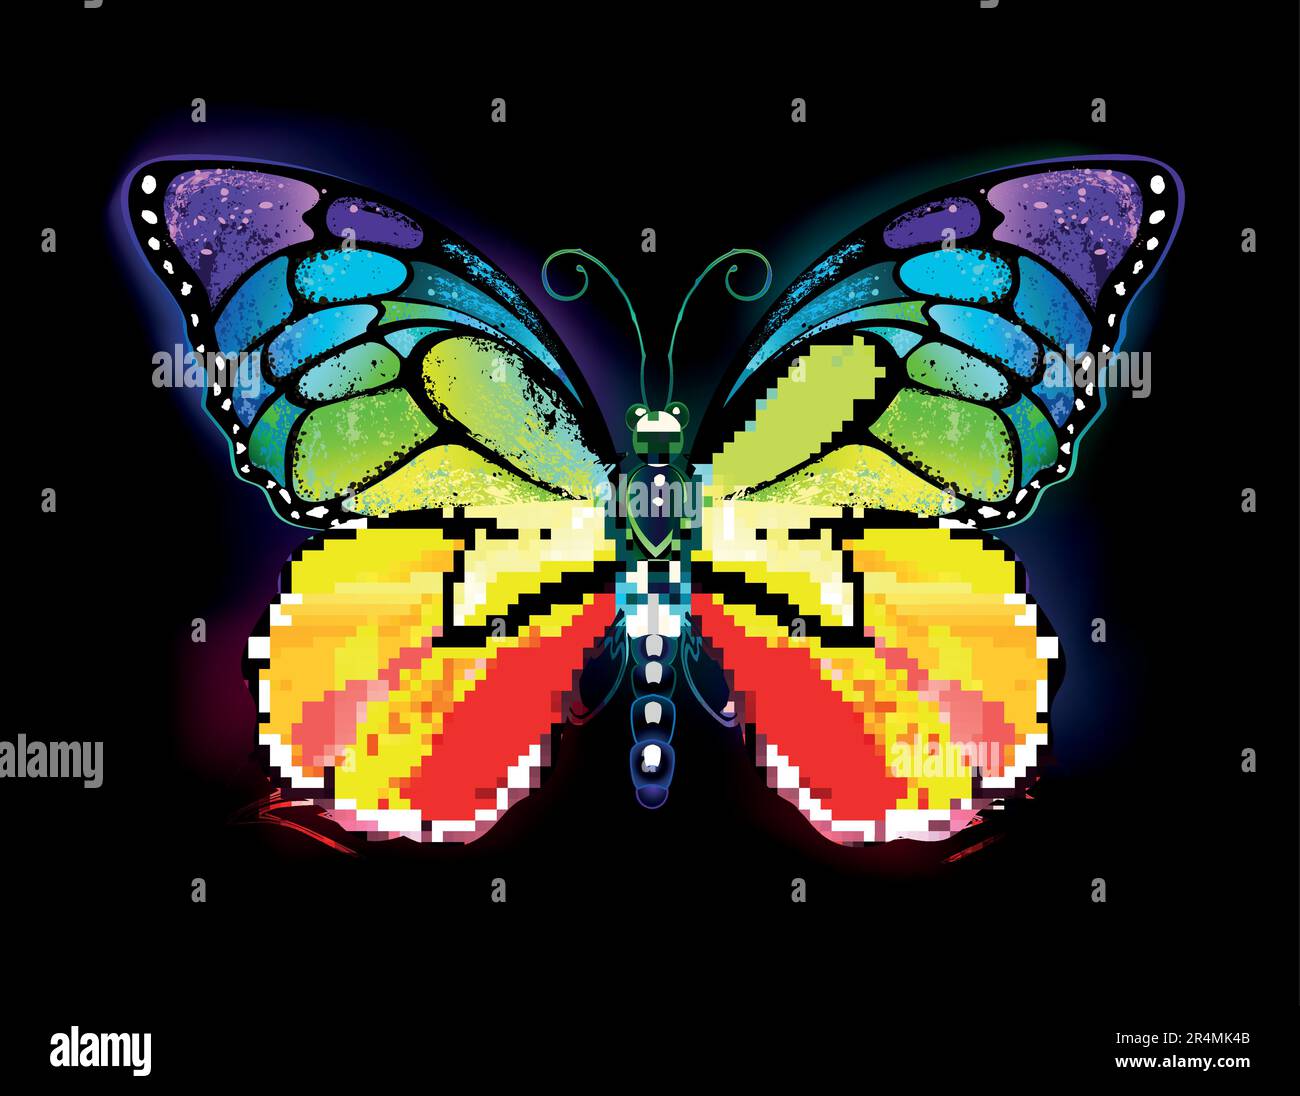 Regenbogen, realistisch, symmetrisch, leuchtend, künstlerisch gezeichnet, Monarch-Schmetterling auf schwarzem Hintergrund. Regenbogen-Schmetterling. Stock Vektor